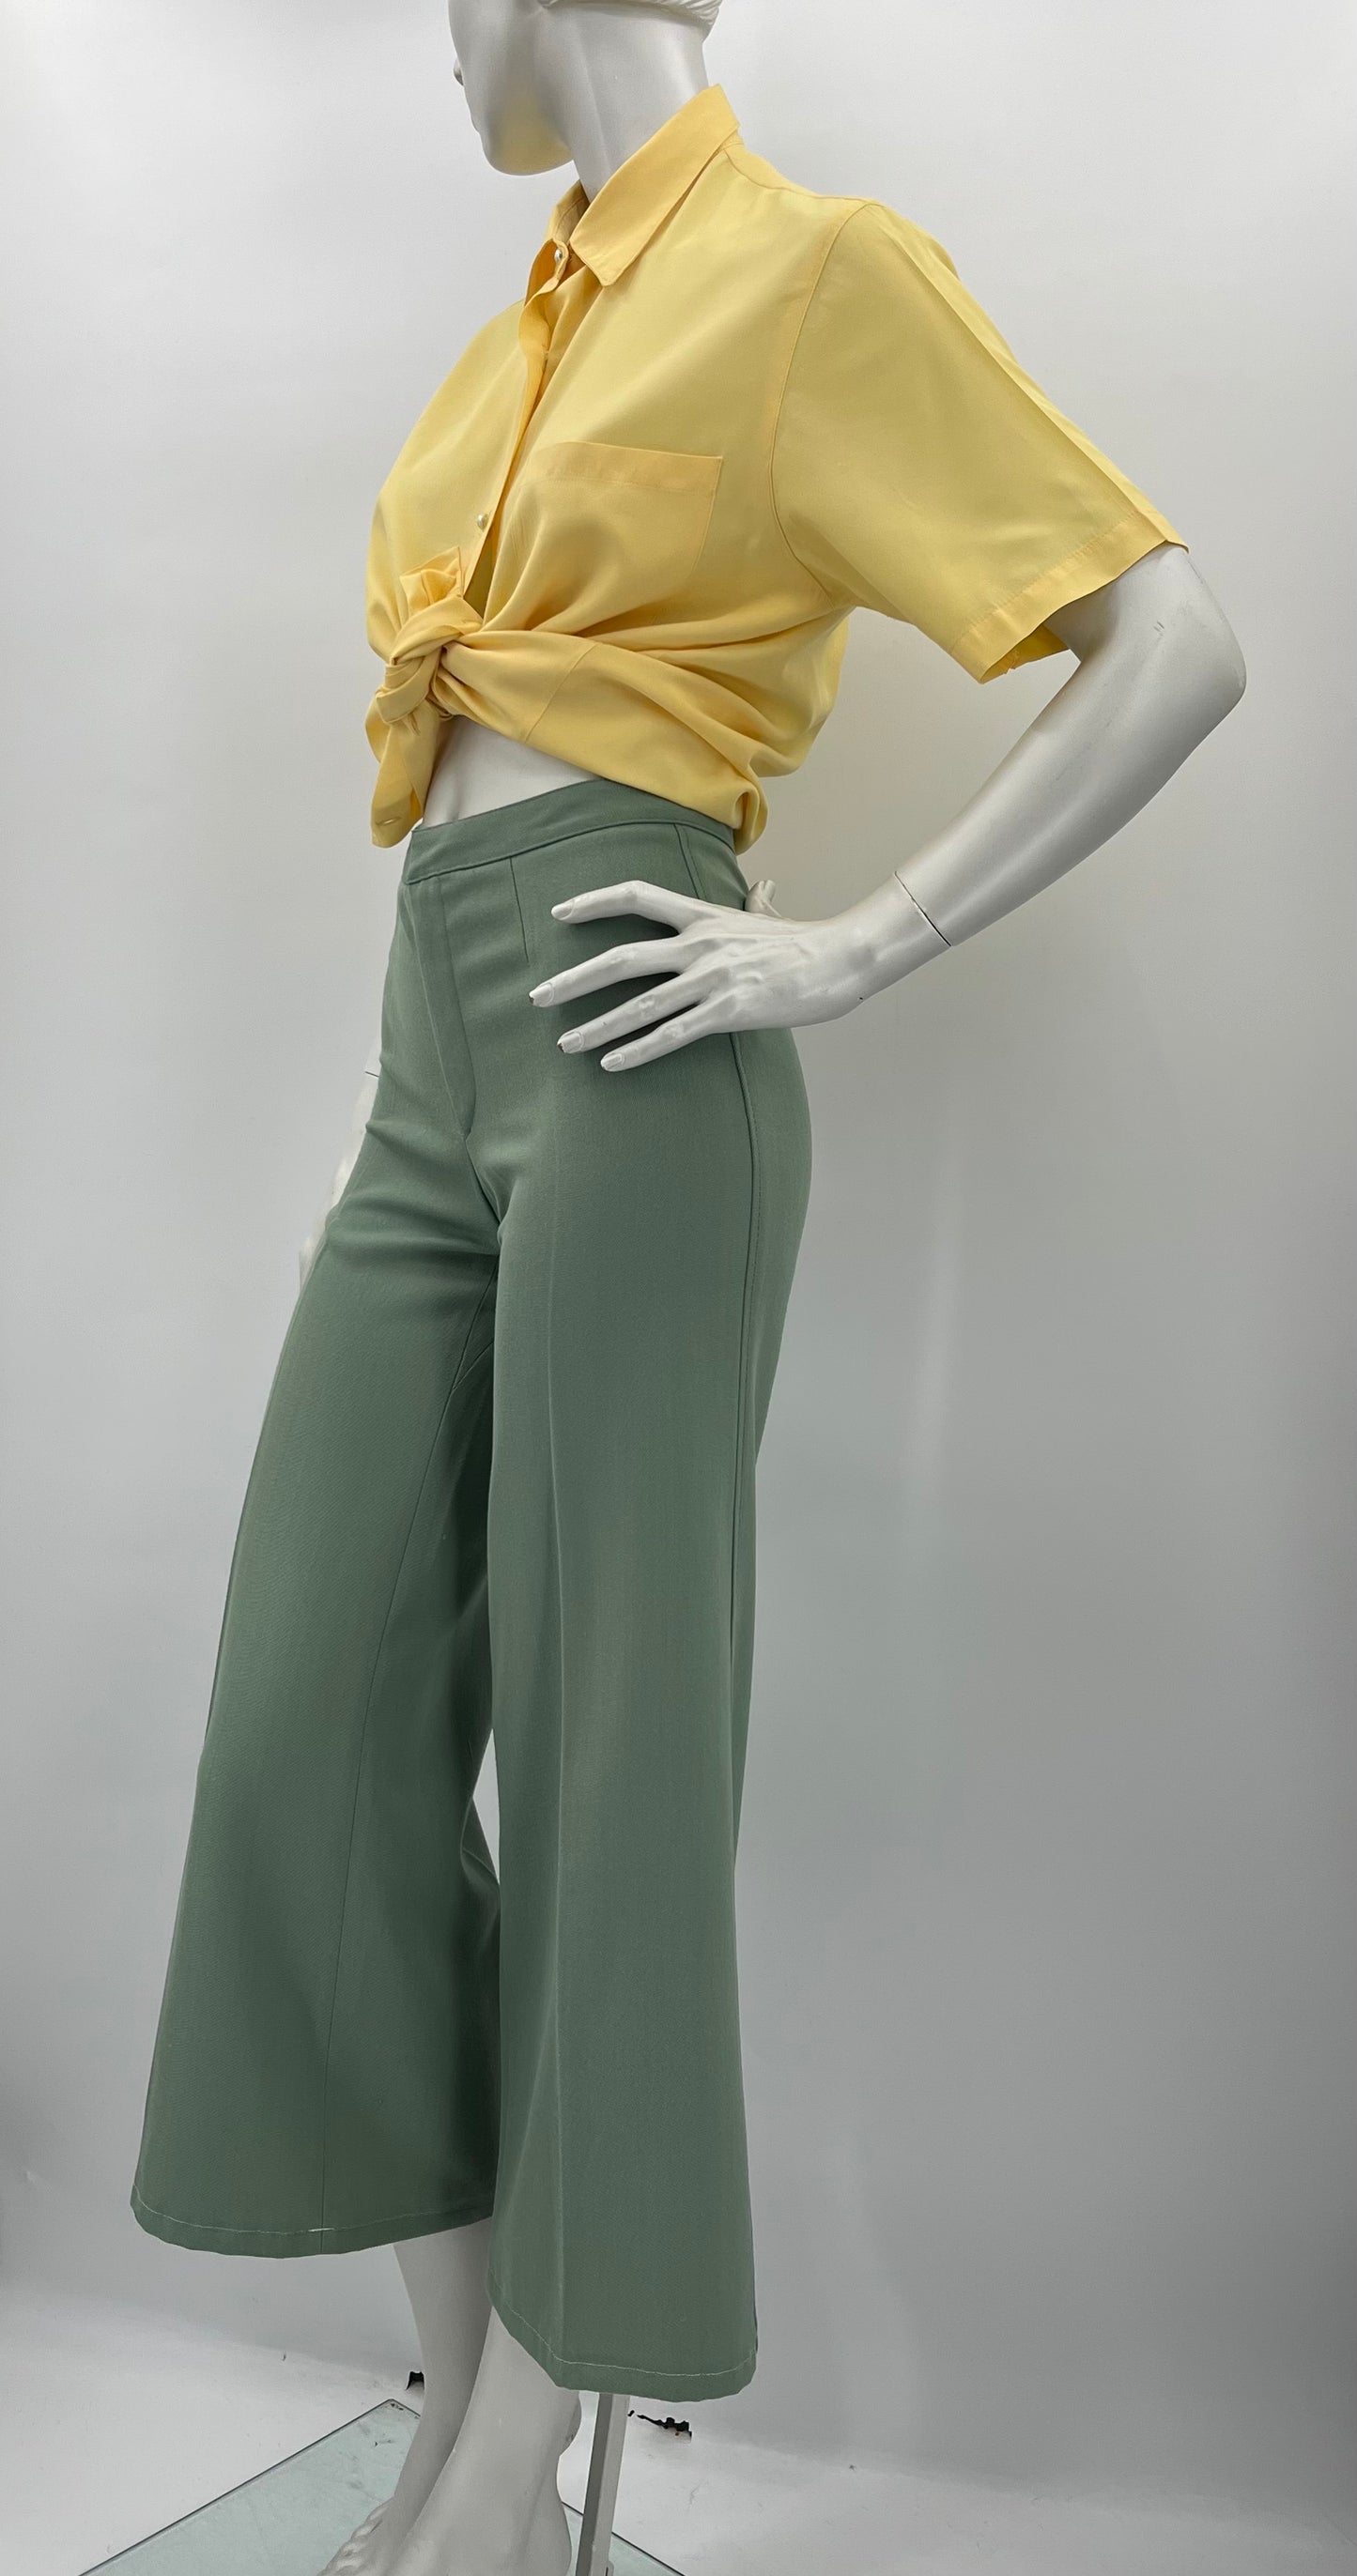 Luhta, vaaleanvihreät leveälahkeiset housut, 70-luku, vyöt.ymp. 64cm, koko 34